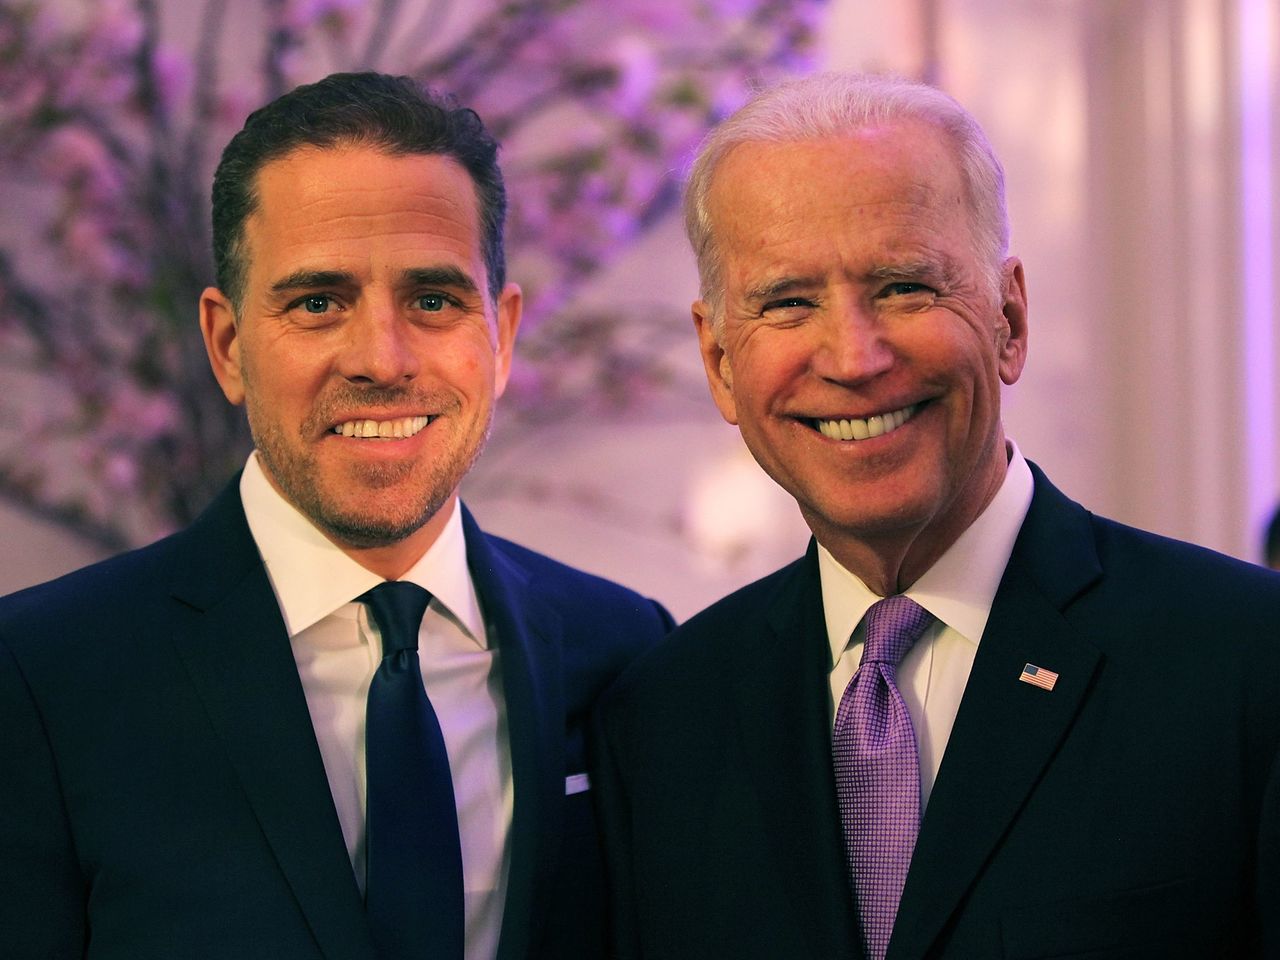 Biden met with 14 of his son’s business associates